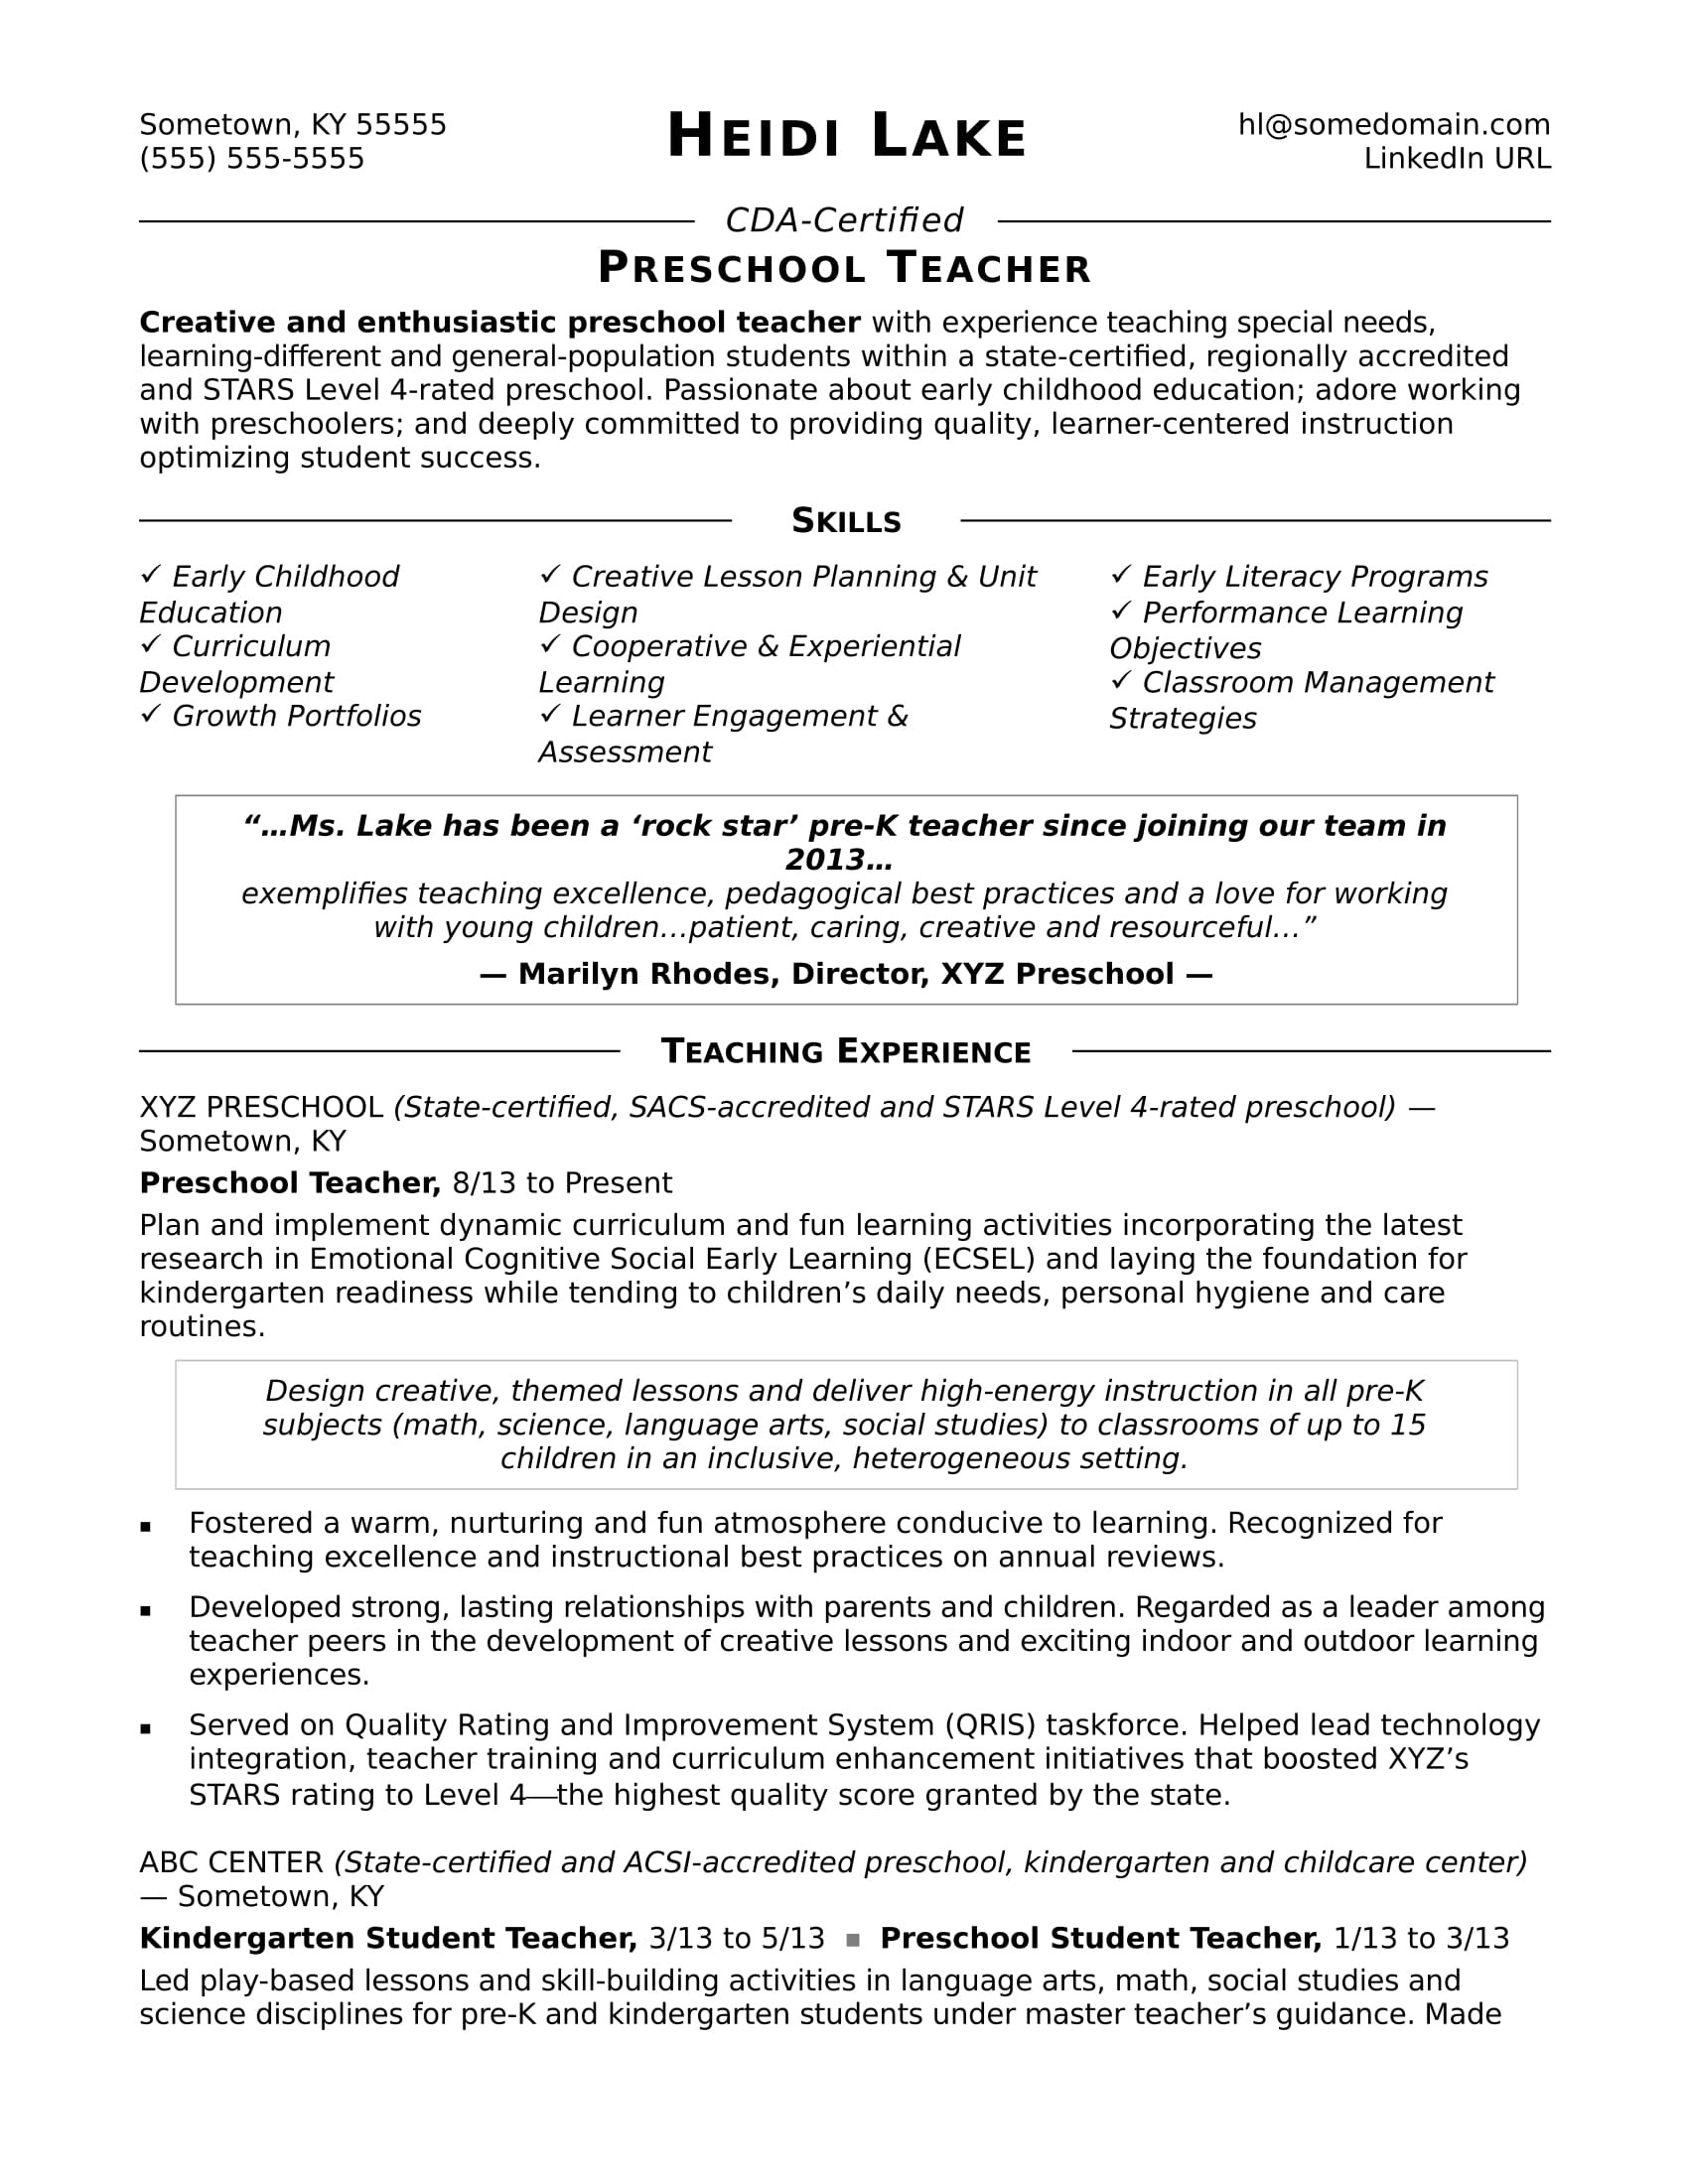 Sample Resume for Play School Teacher Fresher Preschool Teacher Resume Sample Monster.com